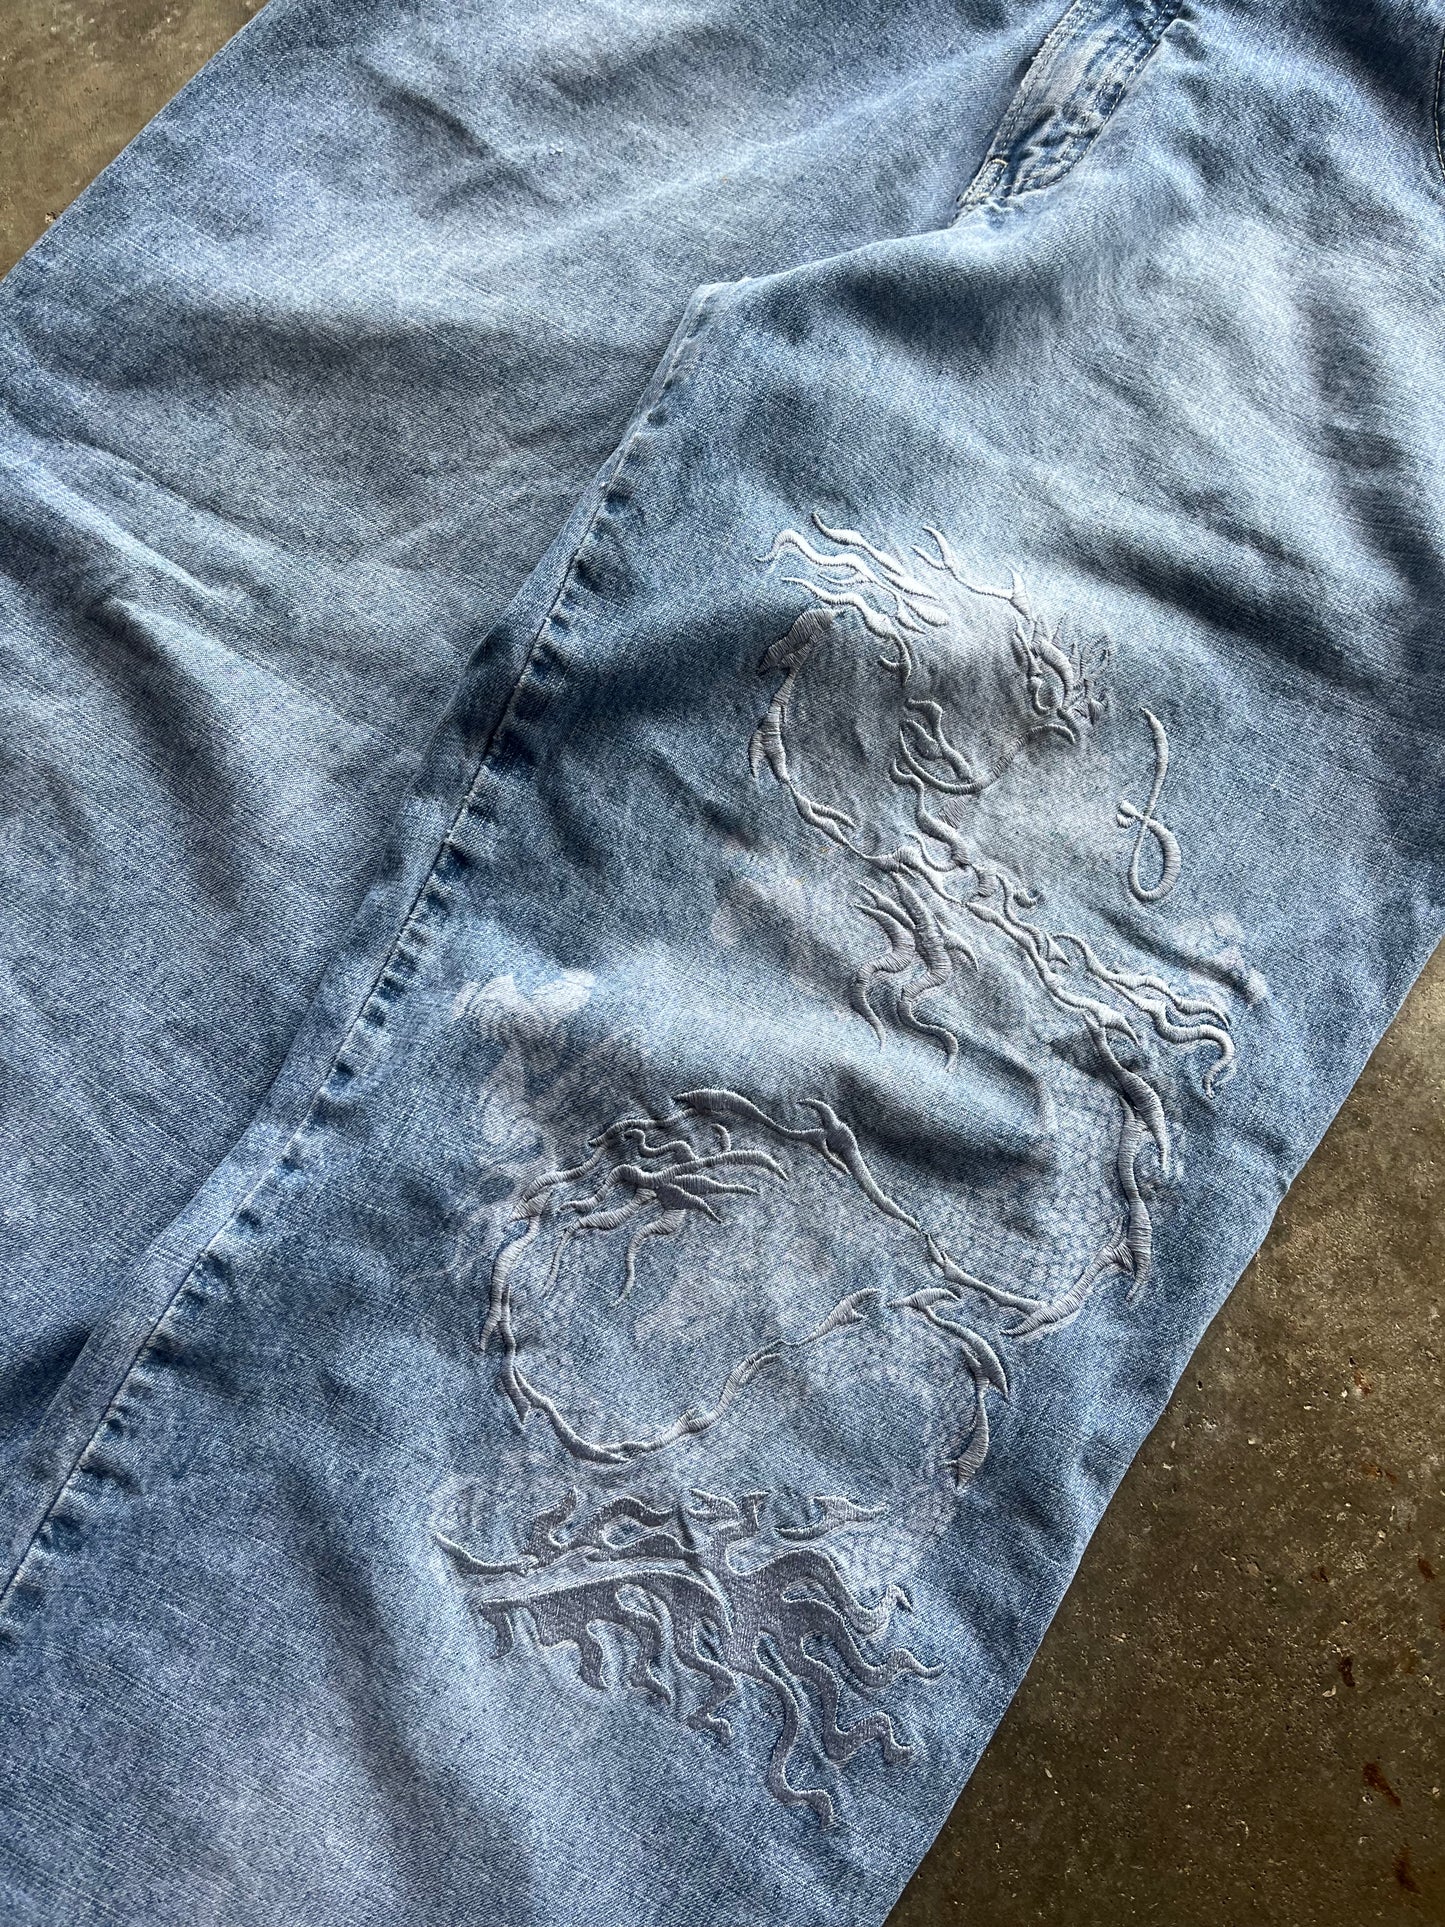 (34 x 30) 00s JNCO Dragon Denim Jeans